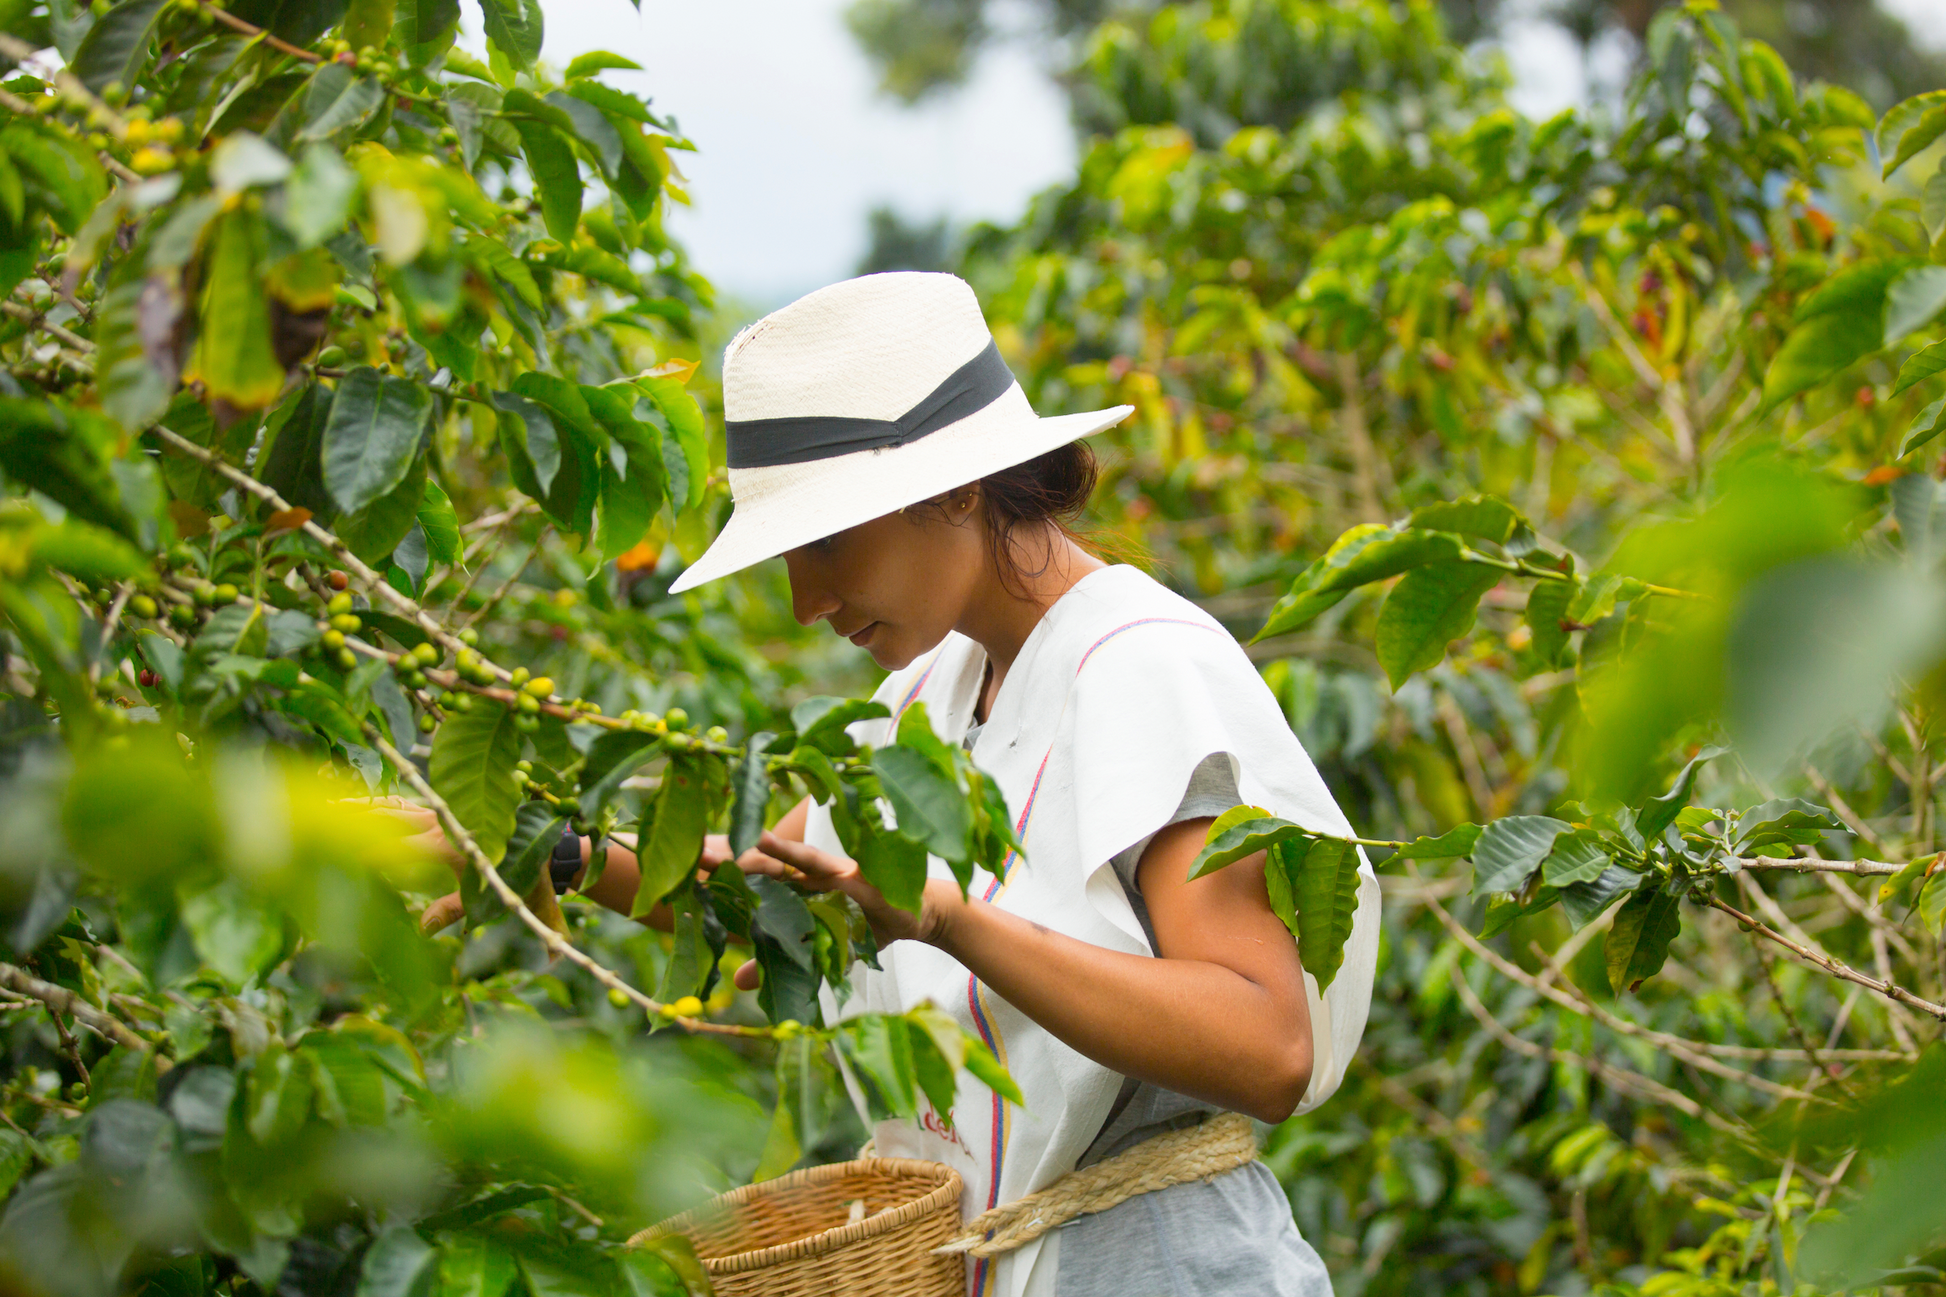 Kaffeebäuerin bei der Ernte in Kolumbien, trägt einen weißen Hut und pflückt Kaffeekirschen.